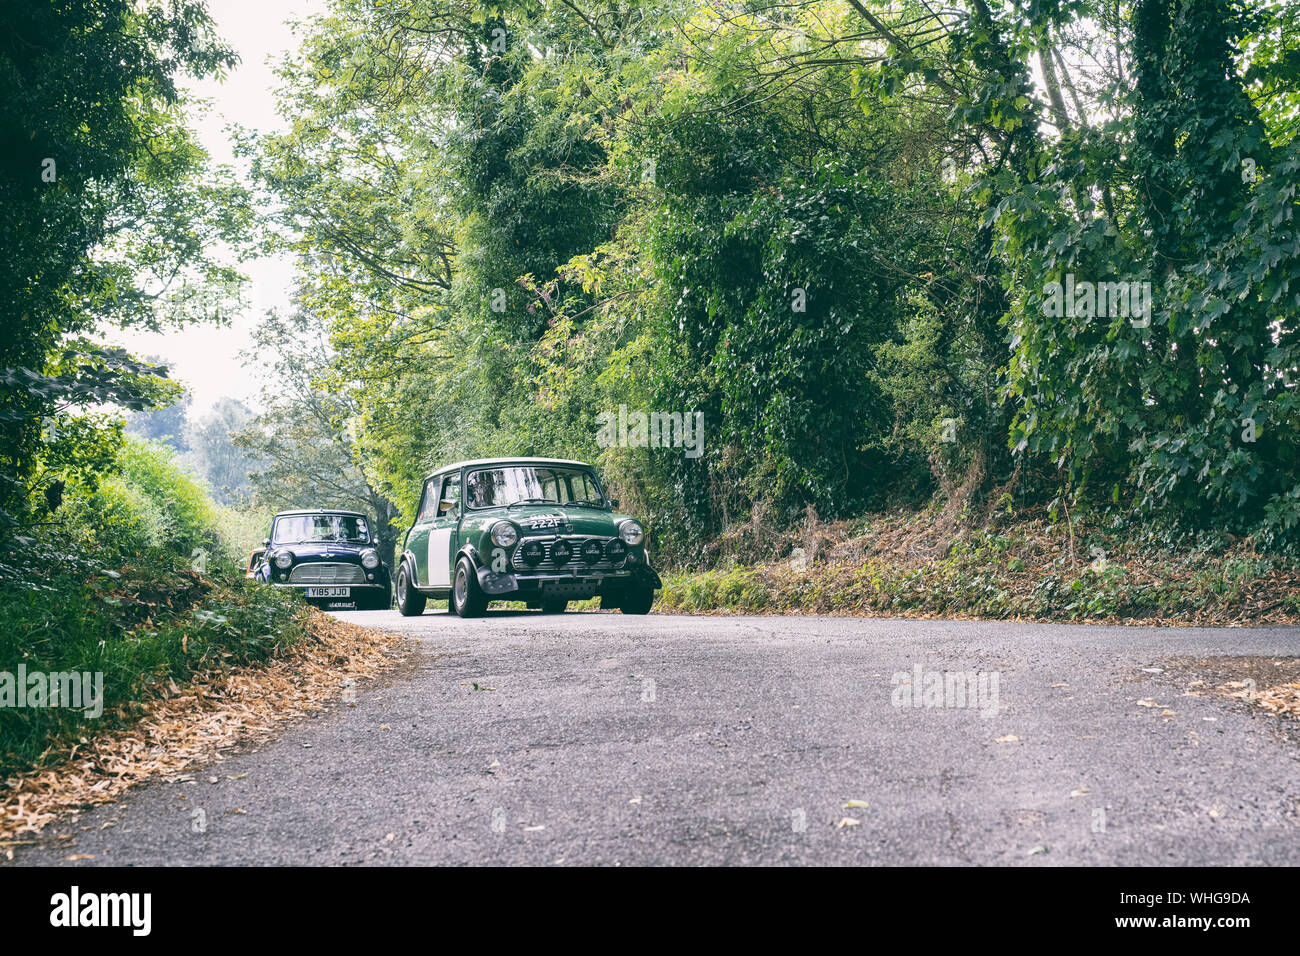 1968 Mini Cooper d'aller dans un salon de voitures dans la campagne de l'Oxfordshire. Broughton, Banbury, en Angleterre. Vintage filtre appliqué Banque D'Images